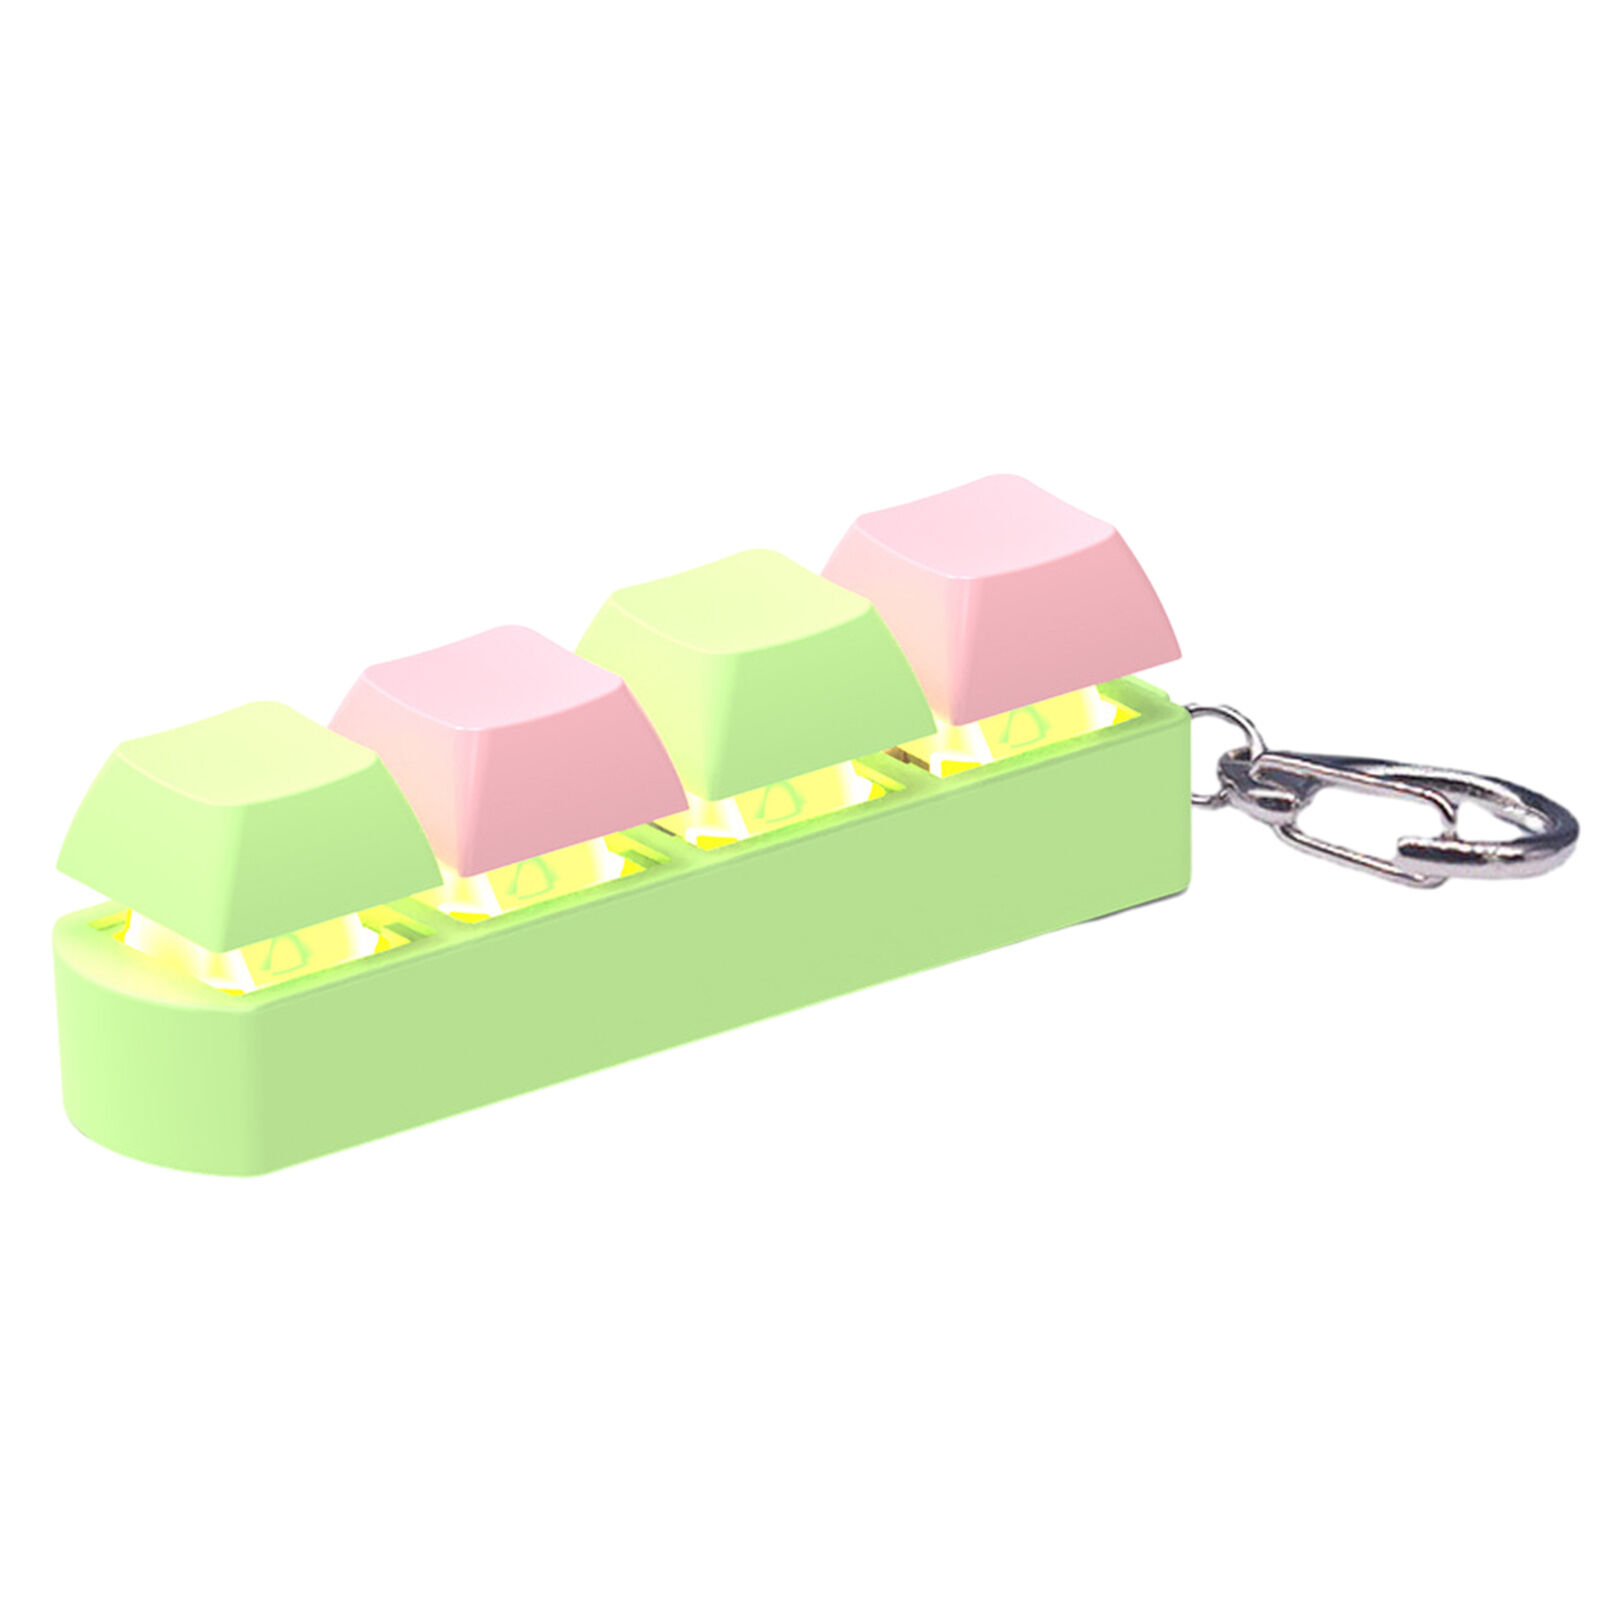 Keyboard Fidget Toy Creative Hand Fidget Anti Stress Fingertip Fidget Keycap Toy